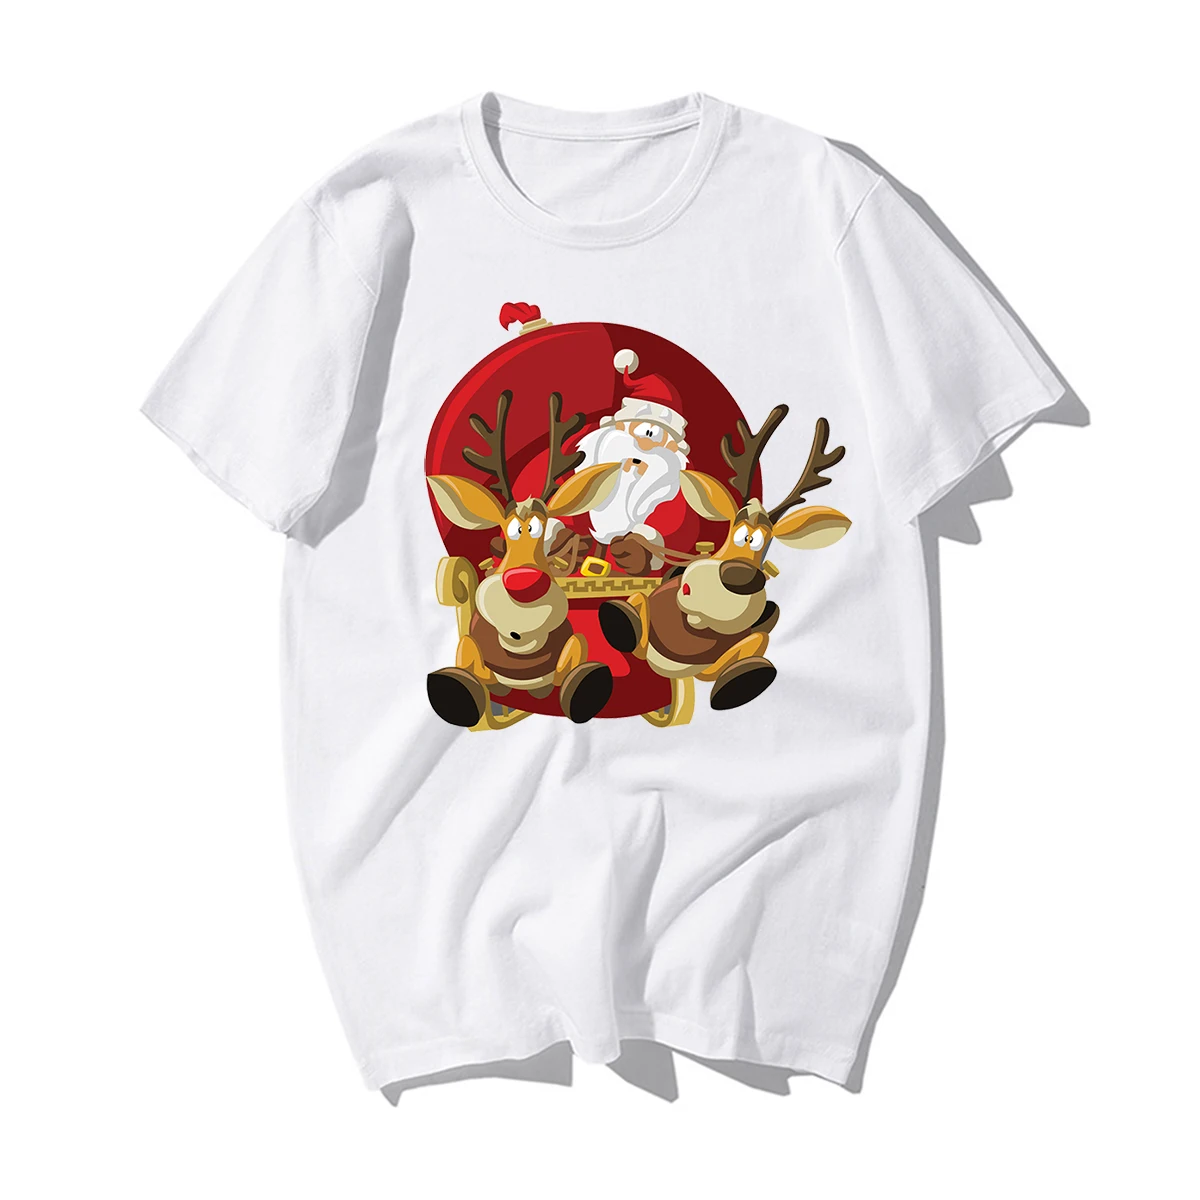 Забавные новогодние футболки с изображением Санта Клауса и оленя, мужские футболки с рождеством, мужские повседневные футболки из хлопка, подарок на Рождество для влюбленных - Цвет: White